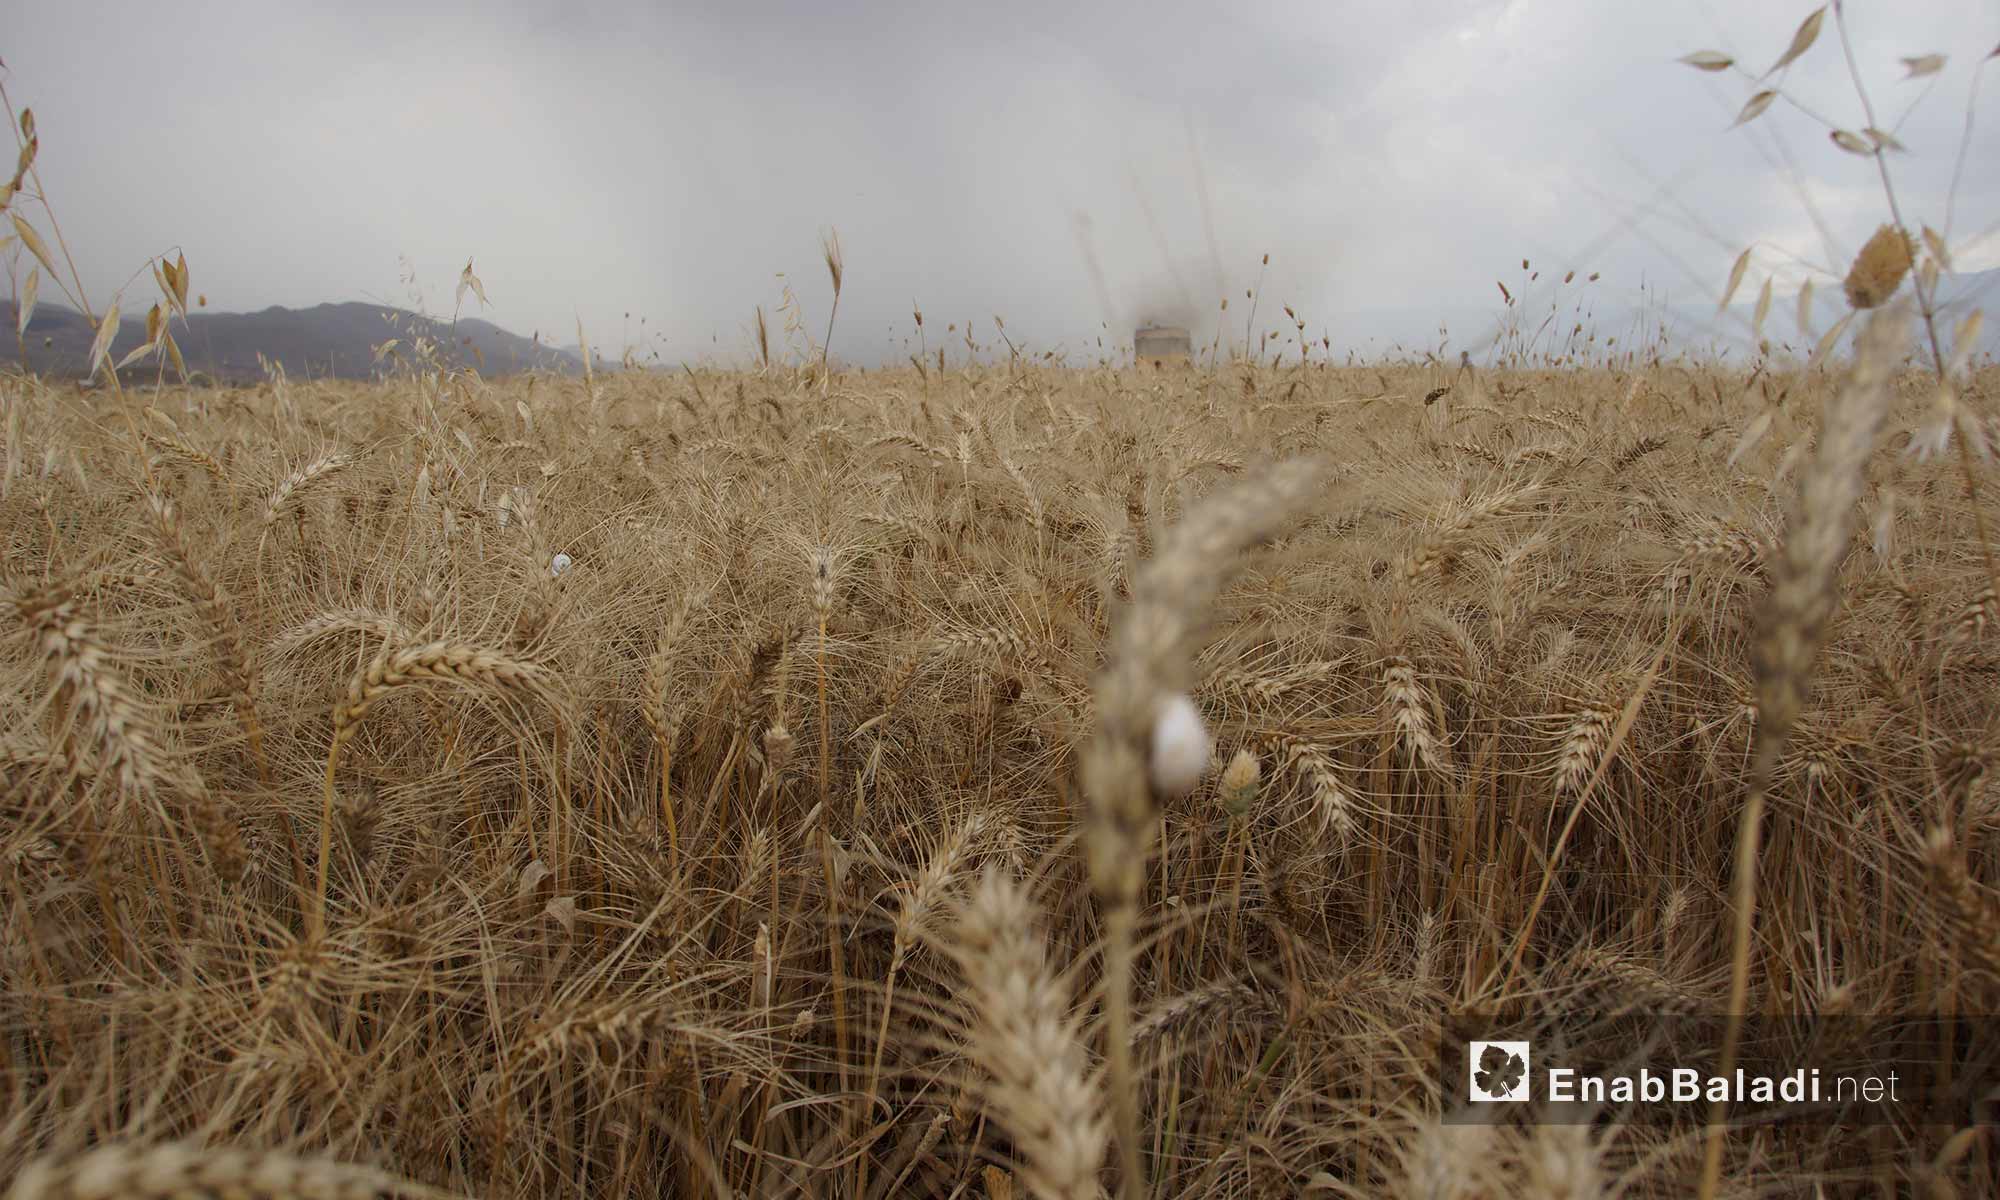  حصاد القمح في سهل الغاب بريف حماة - 29 أيار 2018 (عنب بلدي)